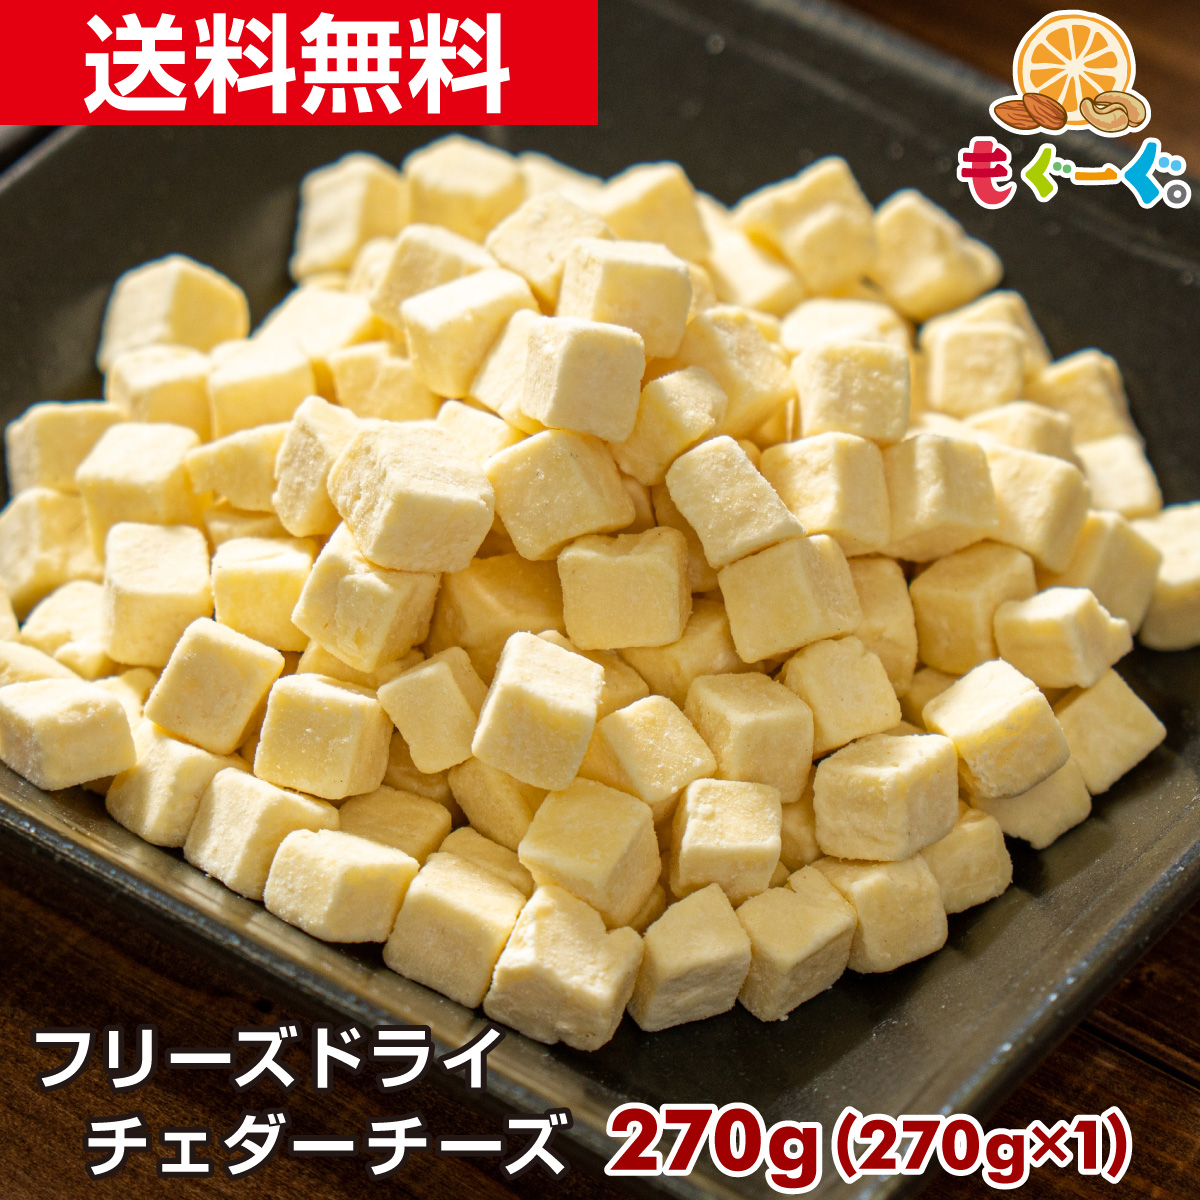 【楽天市場】魅惑の濃厚フリーズドライチェダーチーズ[540g](270g 